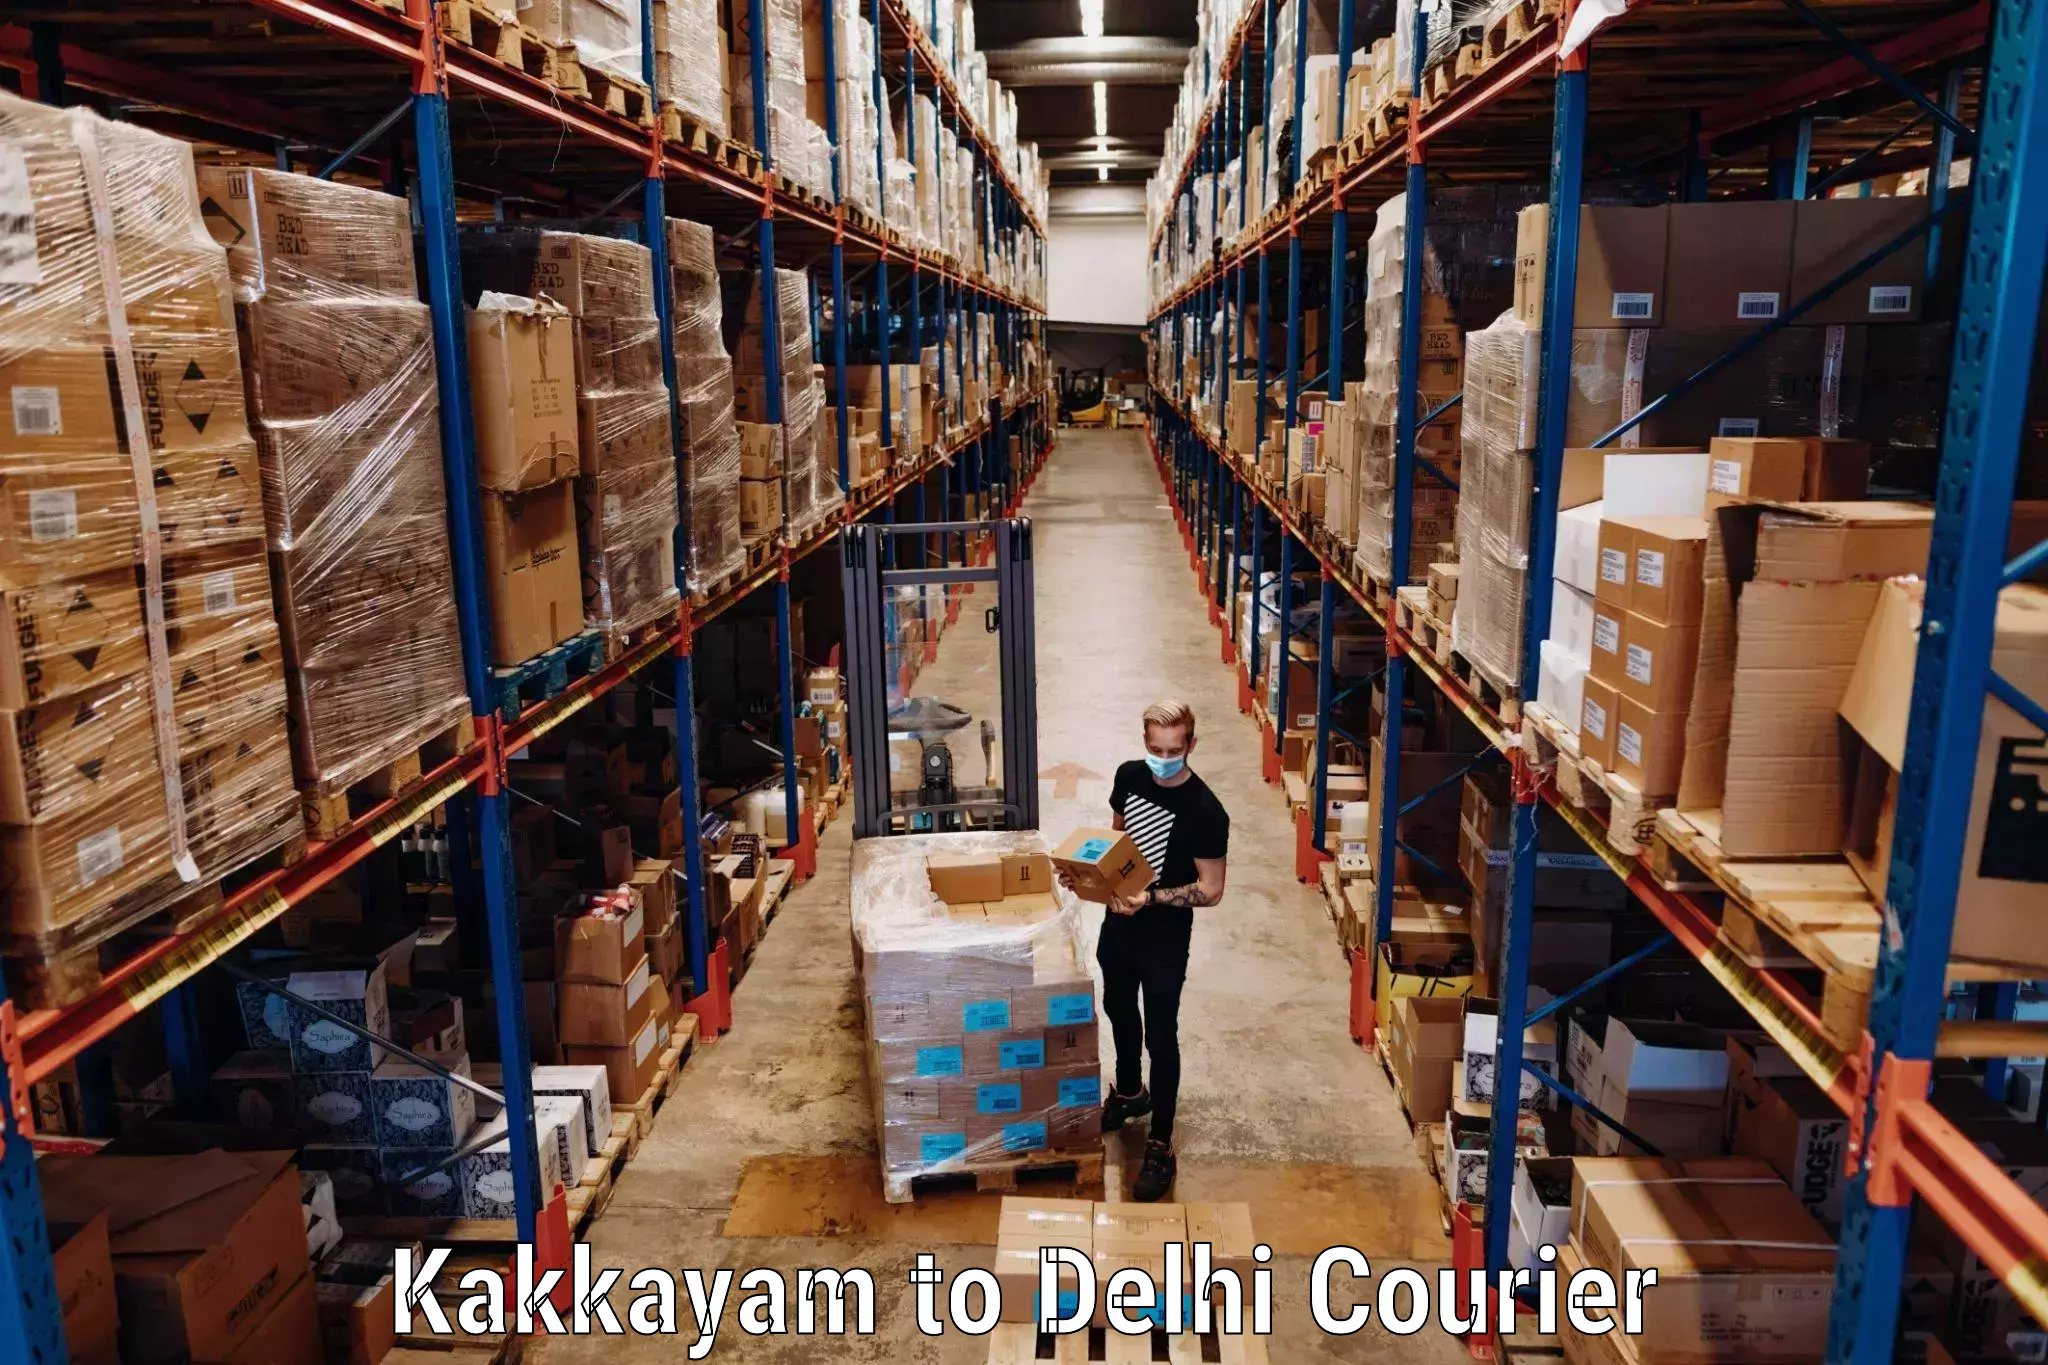 Hassle-free luggage shipping Kakkayam to NCR